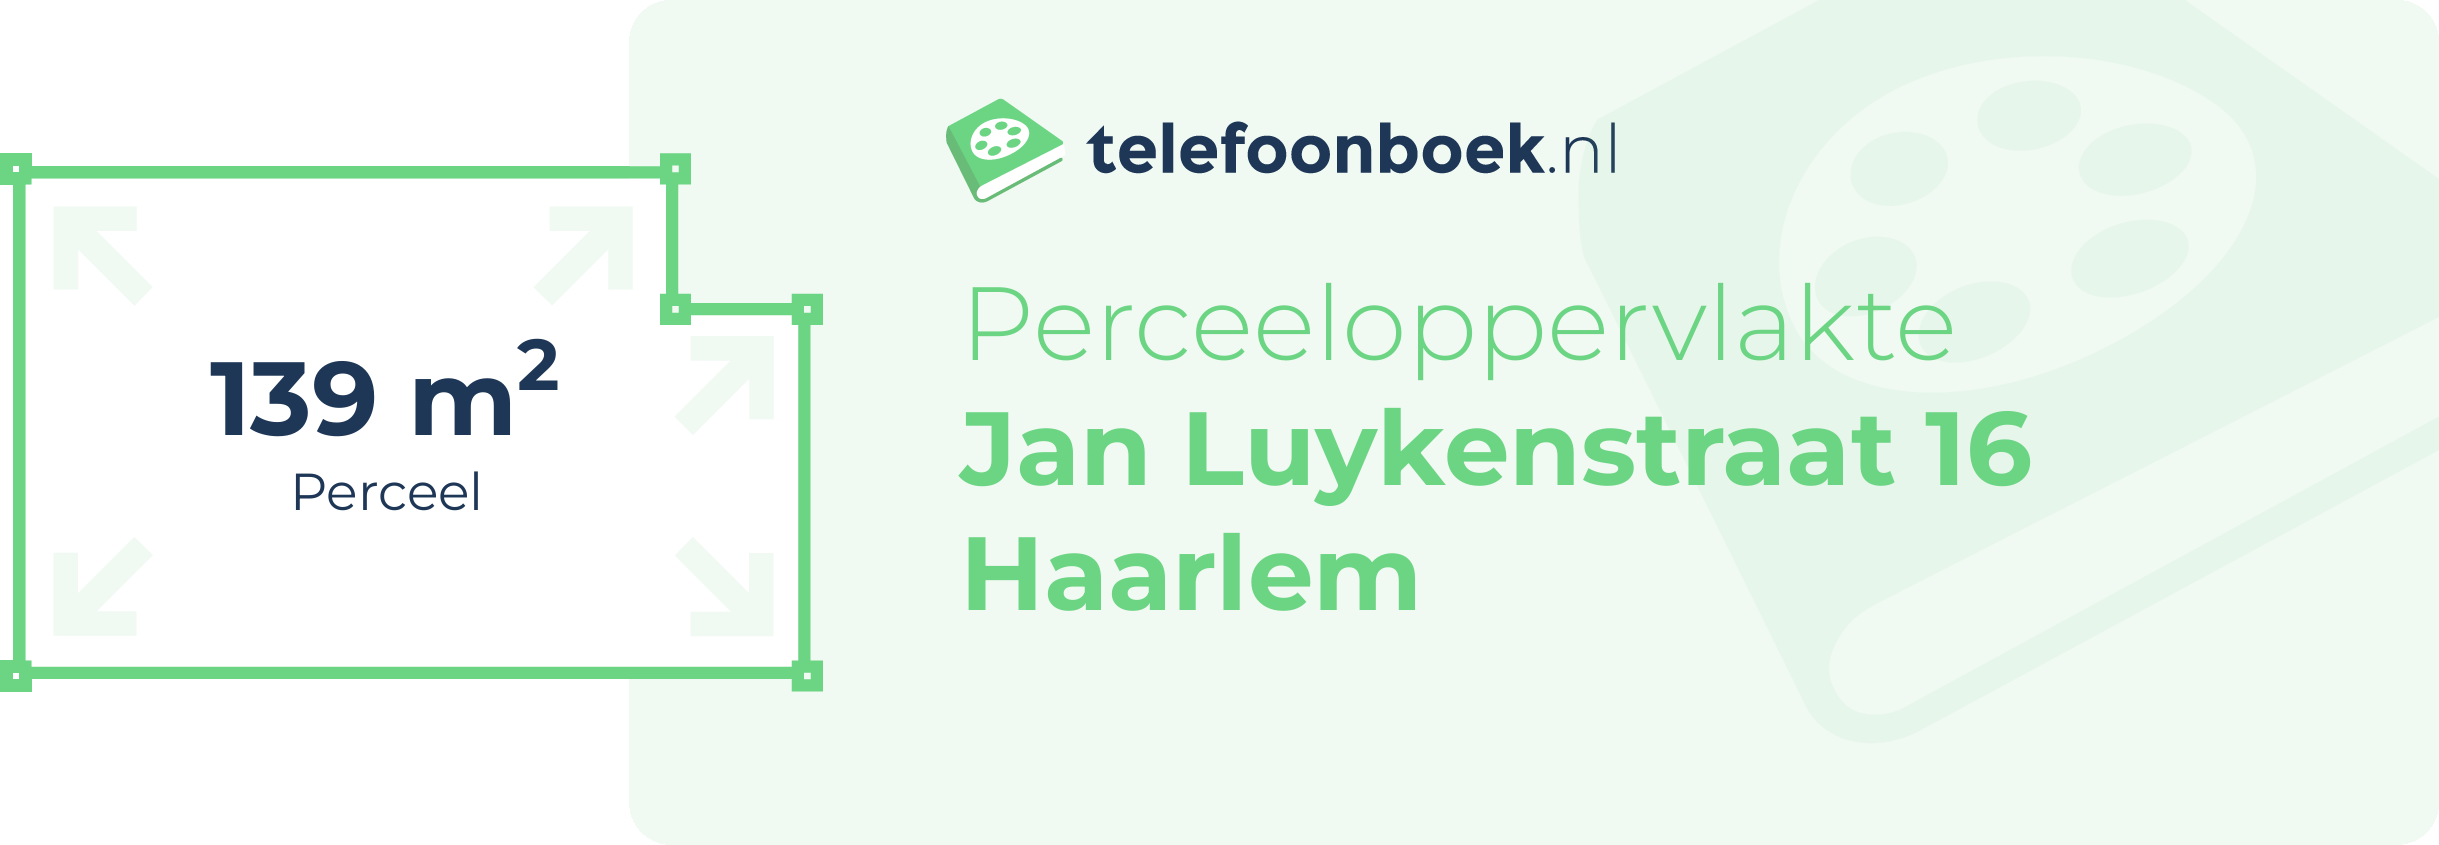 Perceeloppervlakte Jan Luykenstraat 16 Haarlem